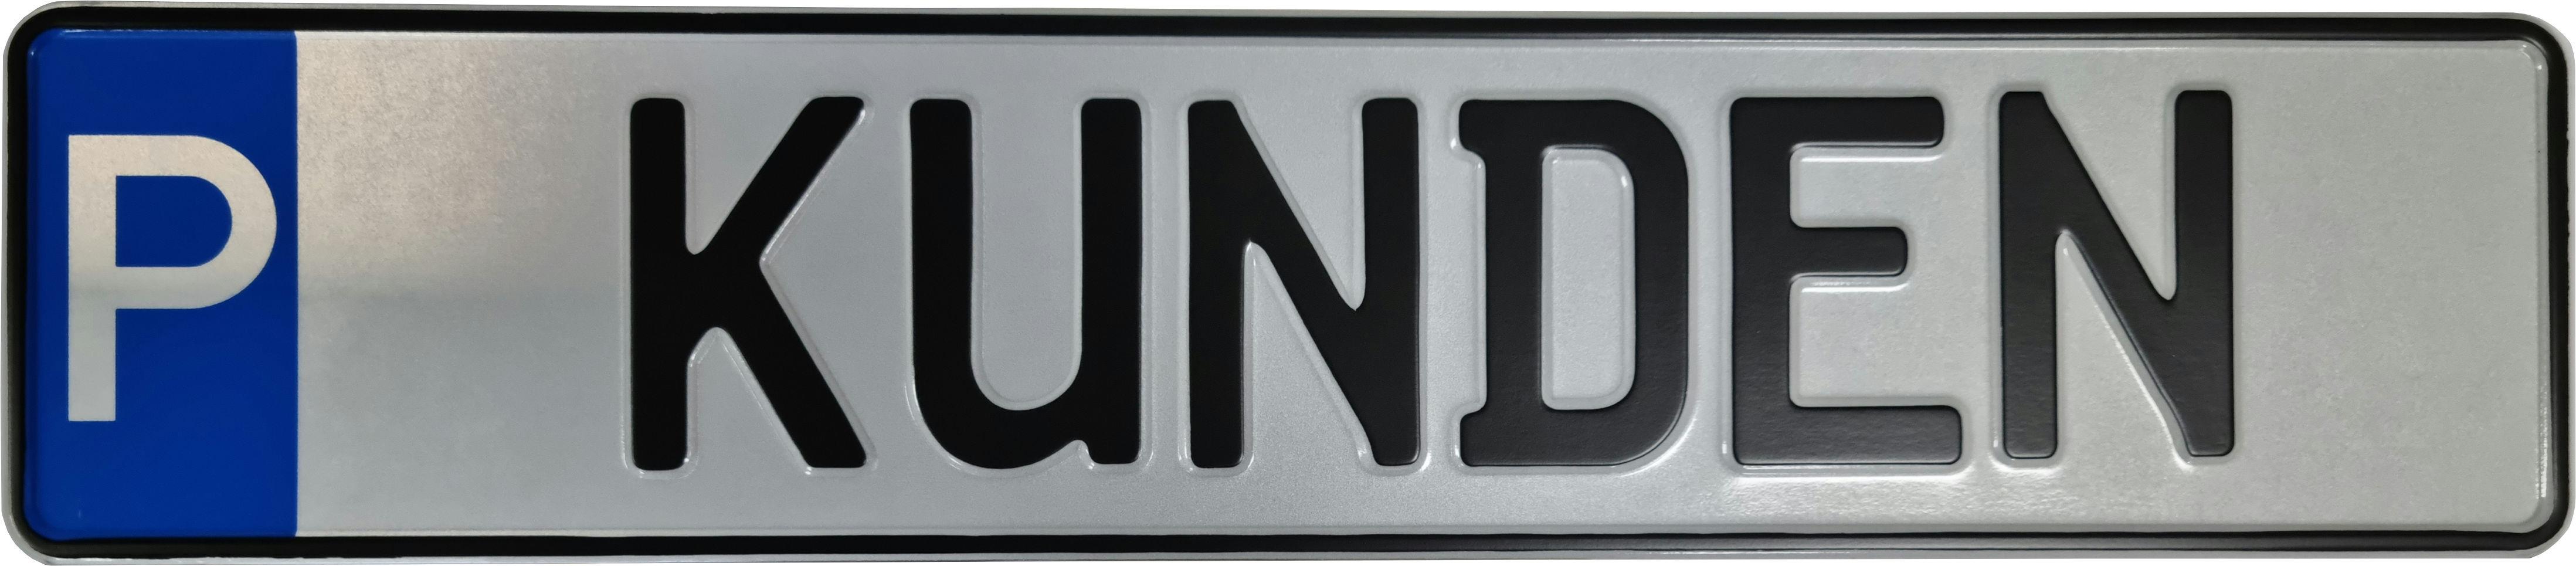 Schild zur Parkplatzkennzeichnung "P-KUNDEN"- KFZ Normgröße, Mittelschrift, geprägt.